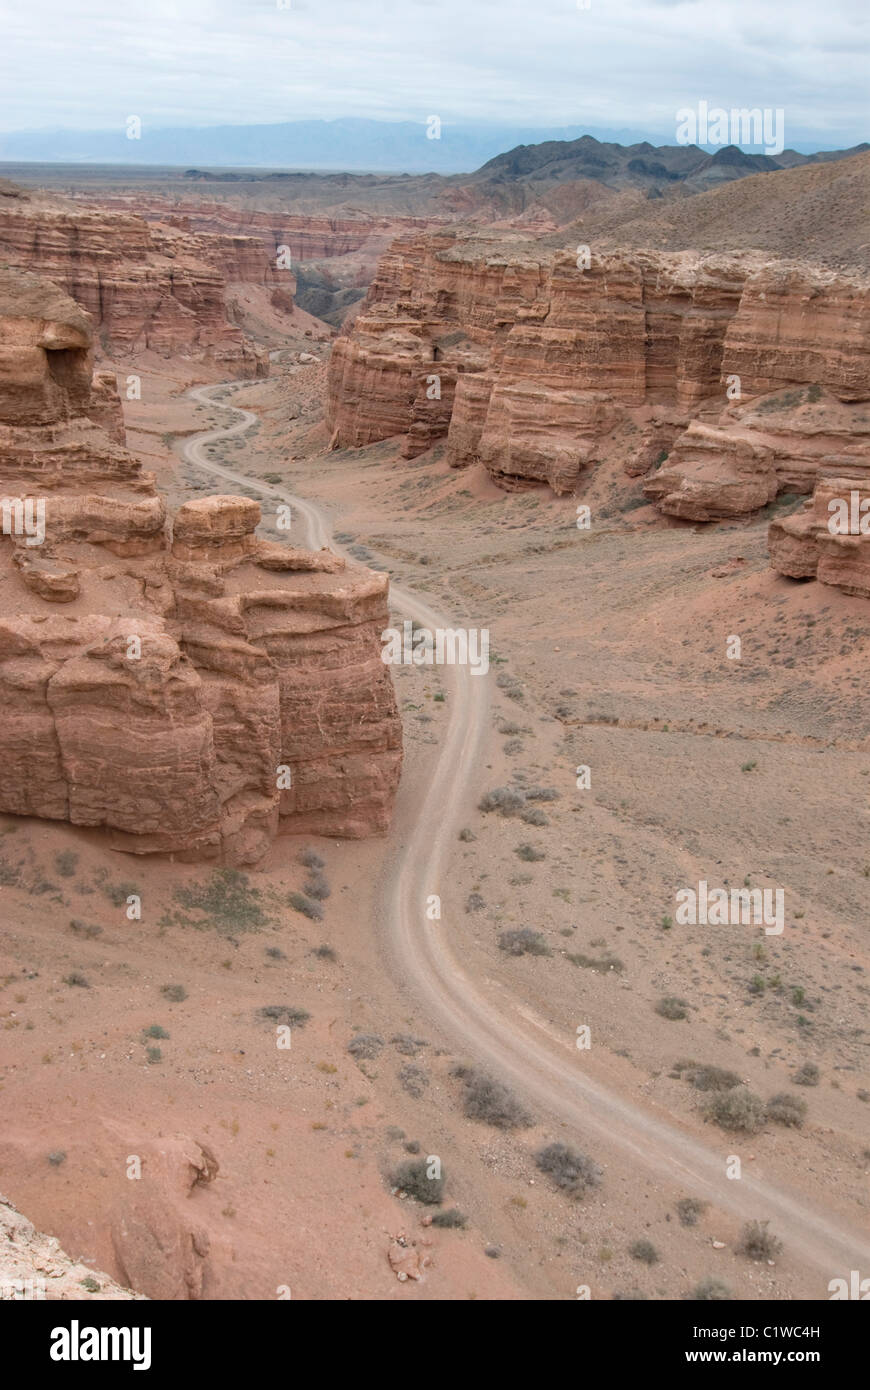 Kazakhstan, Charyn Canyon, Dirt road through stone landscape Stock Photo